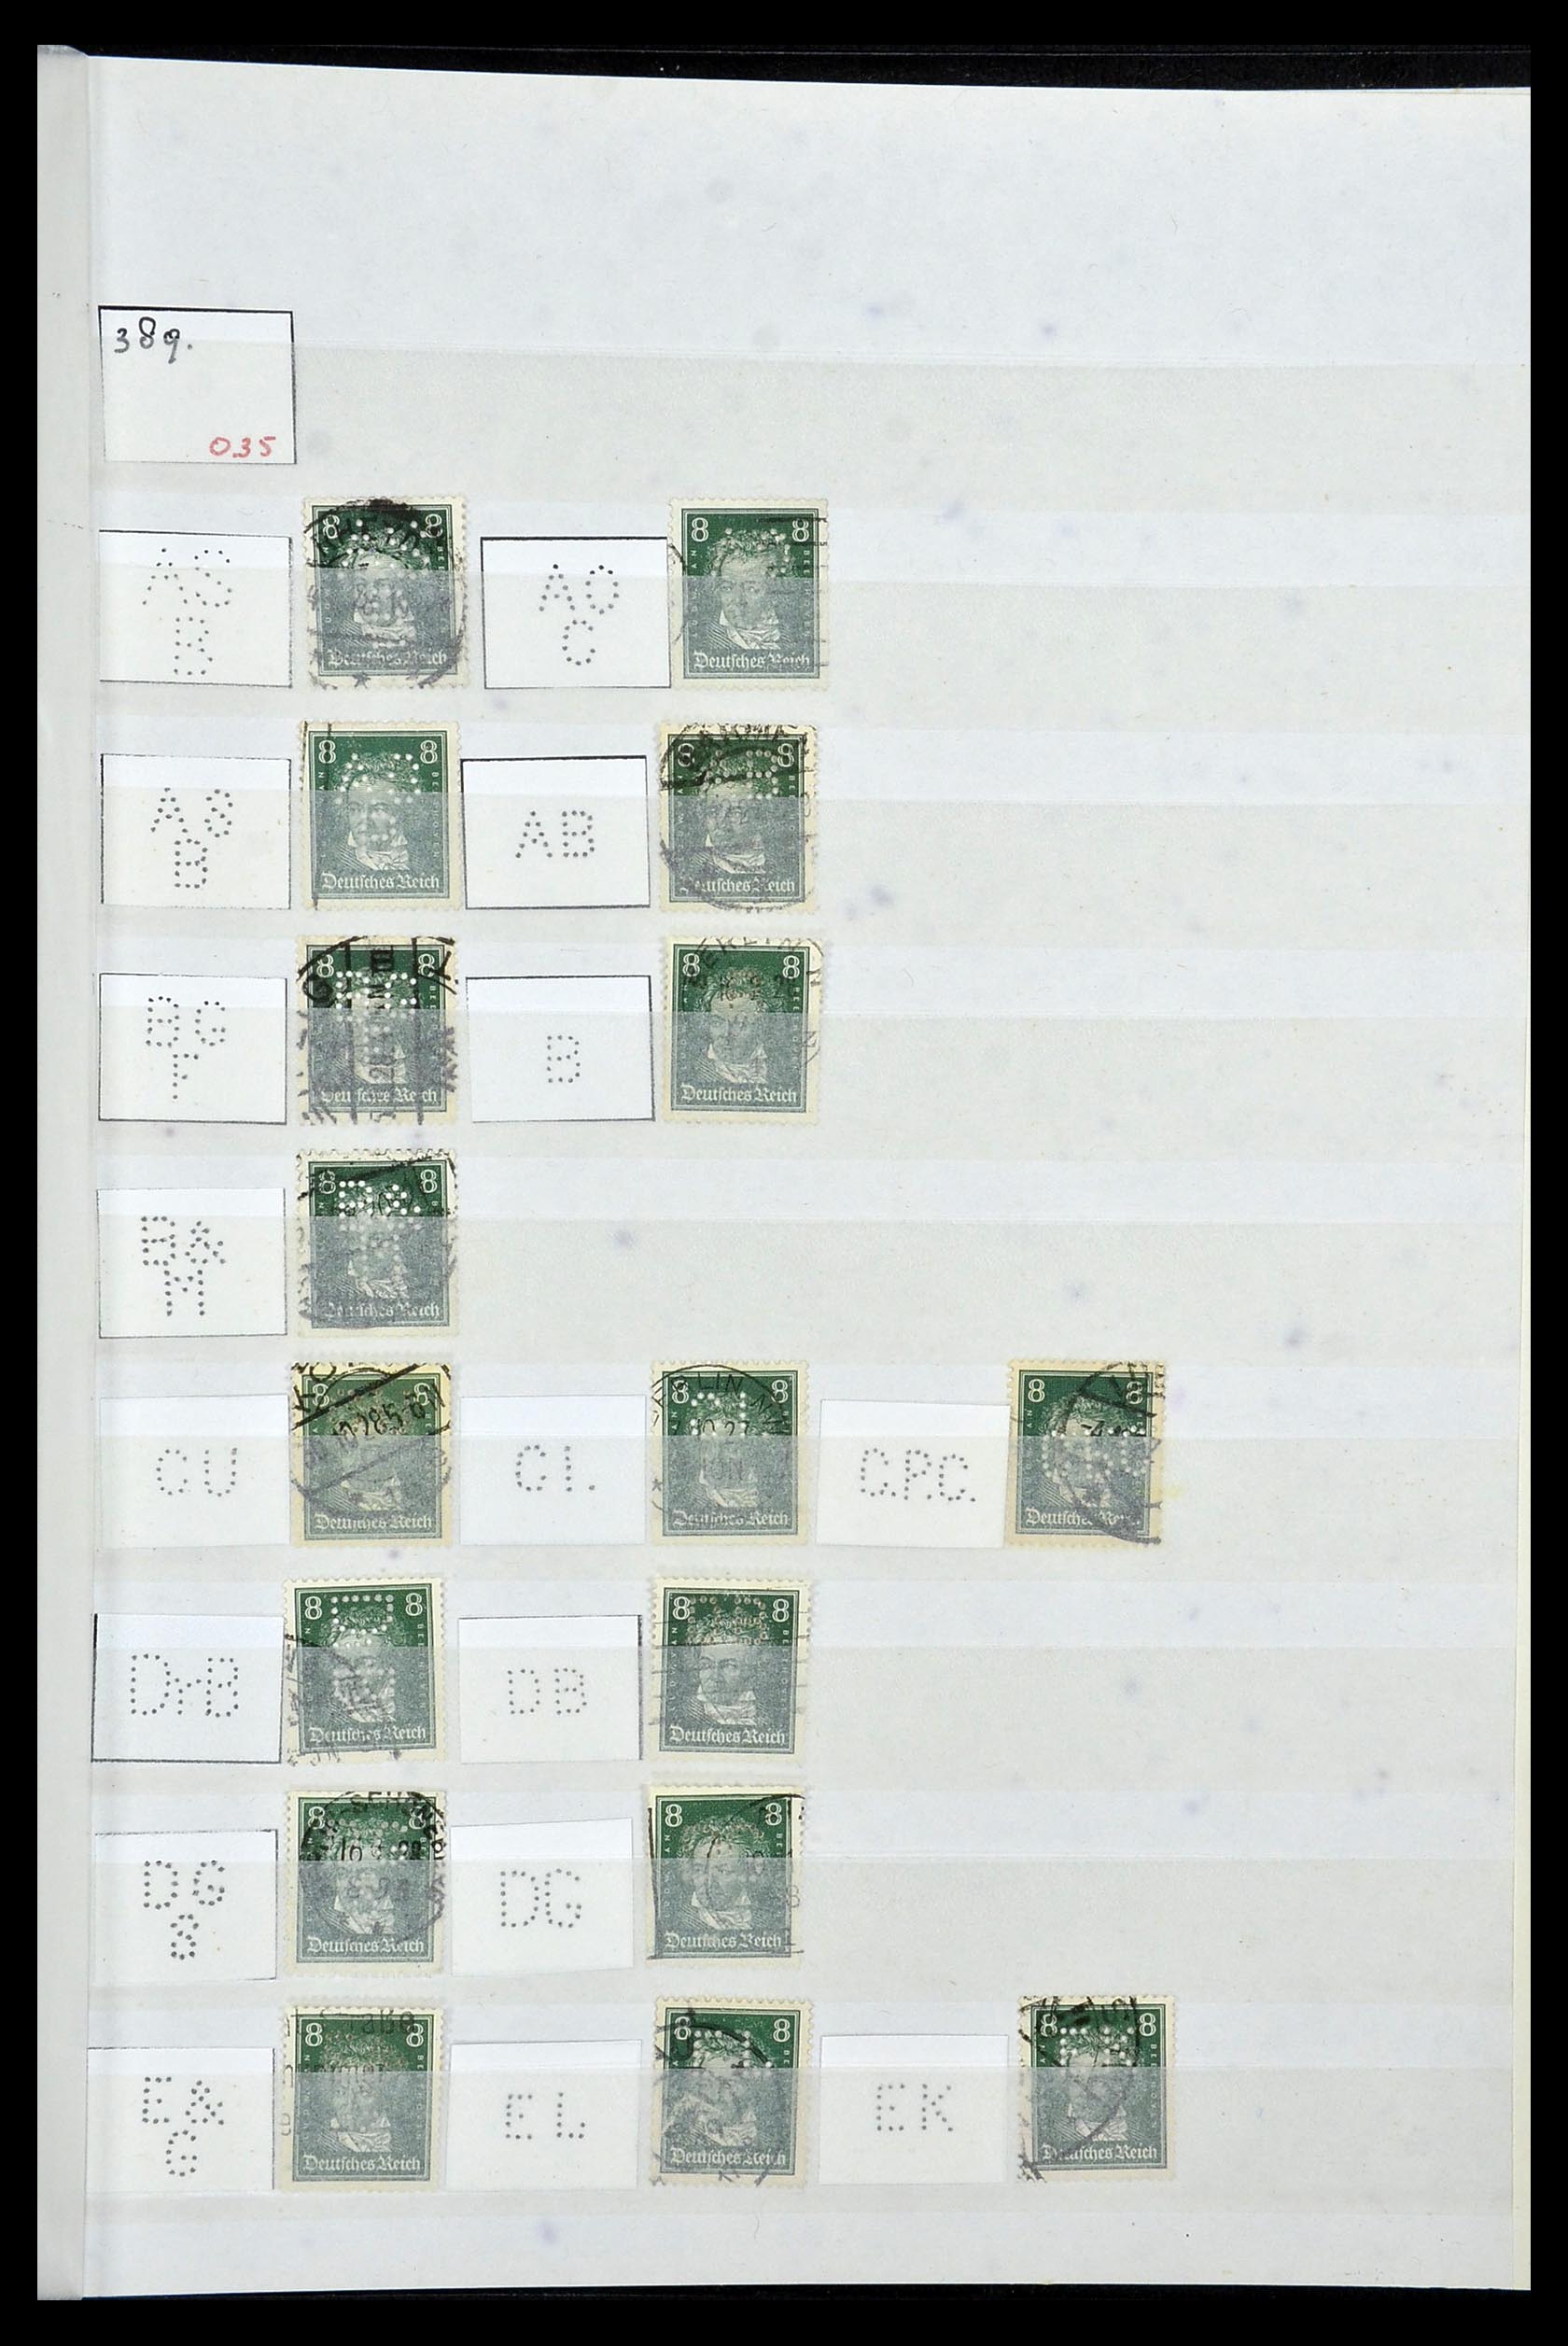 34071 061 - Stamp collection 34071 German Reich perfins 1923-1930.